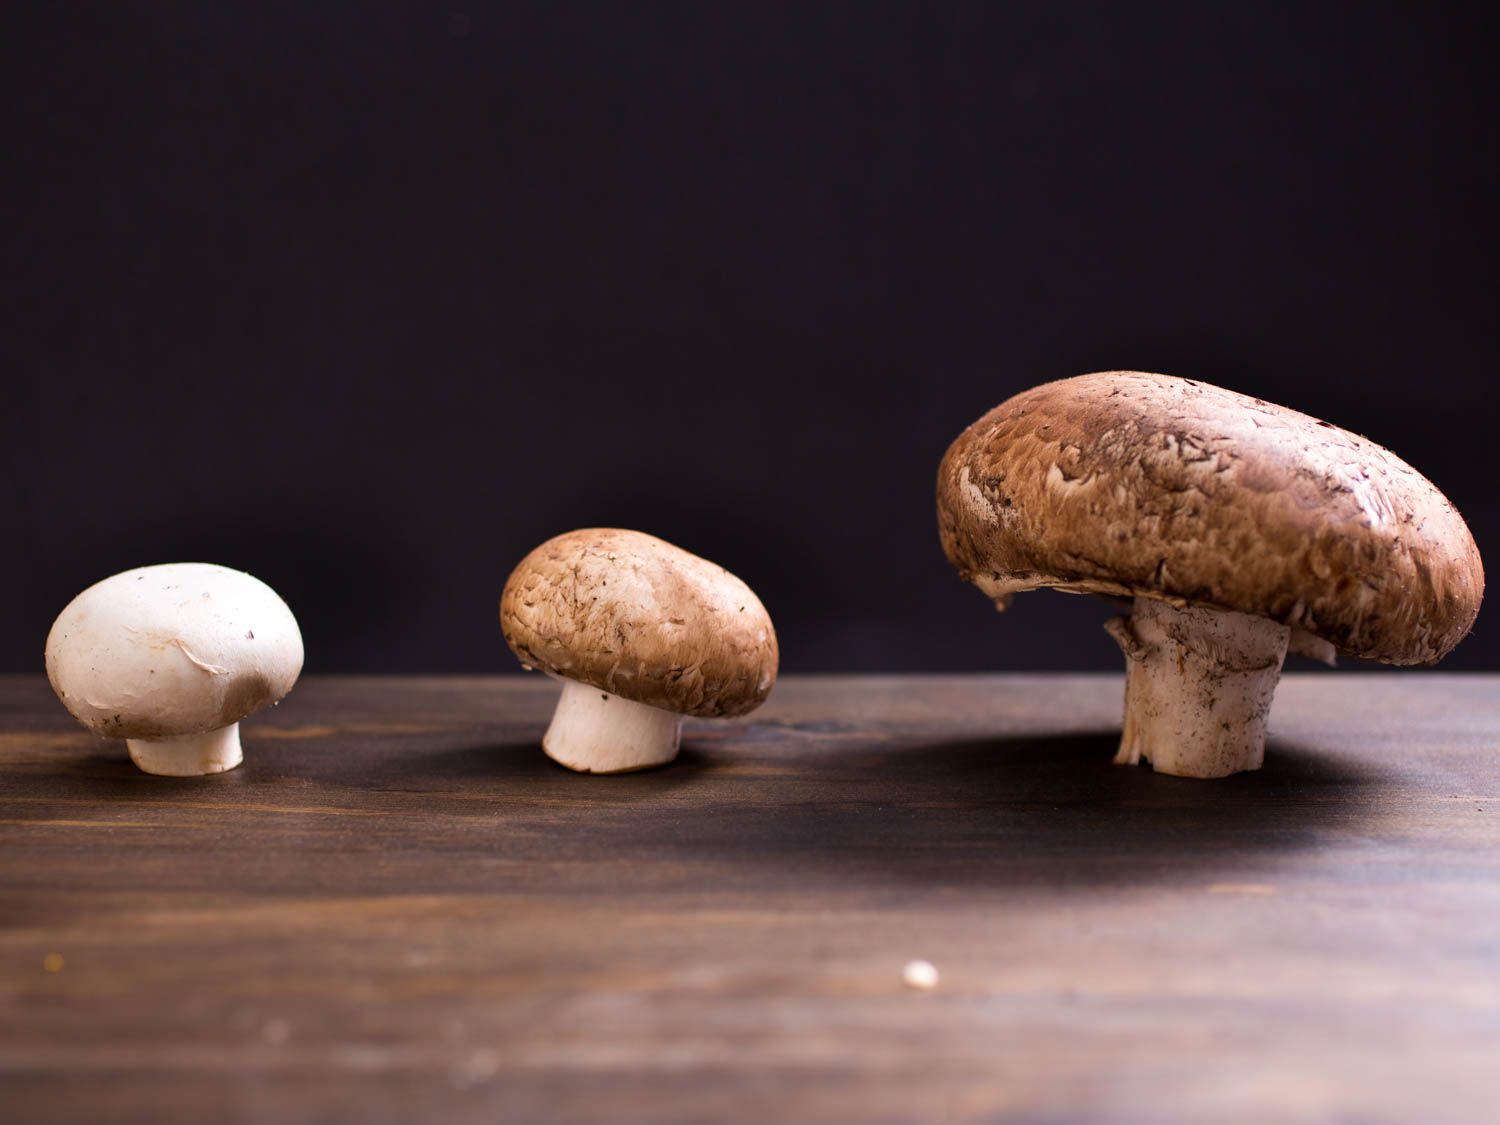 20150527 -蘑菇-指导-维姬-沃斯克- 5. - jpg